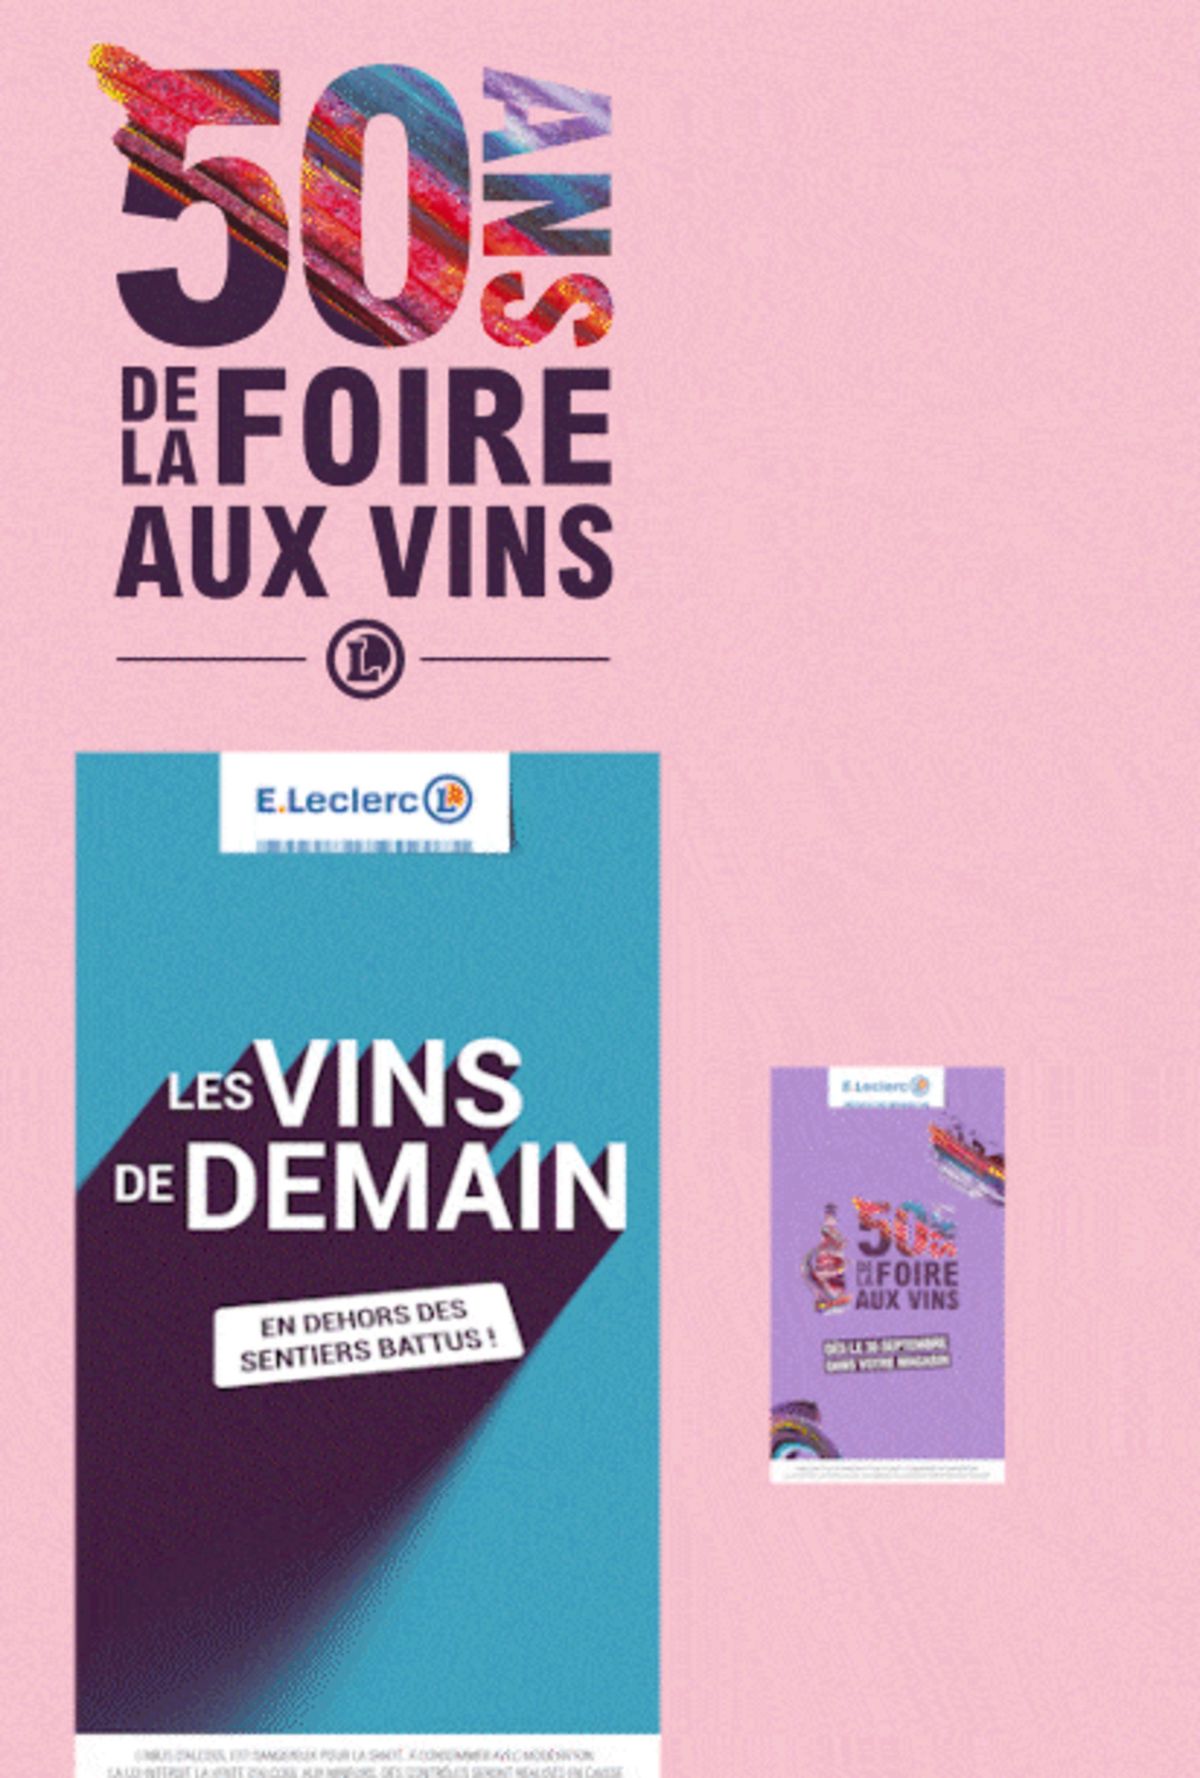 Catalogue Foire Aux Vins - Mixte, page 01178